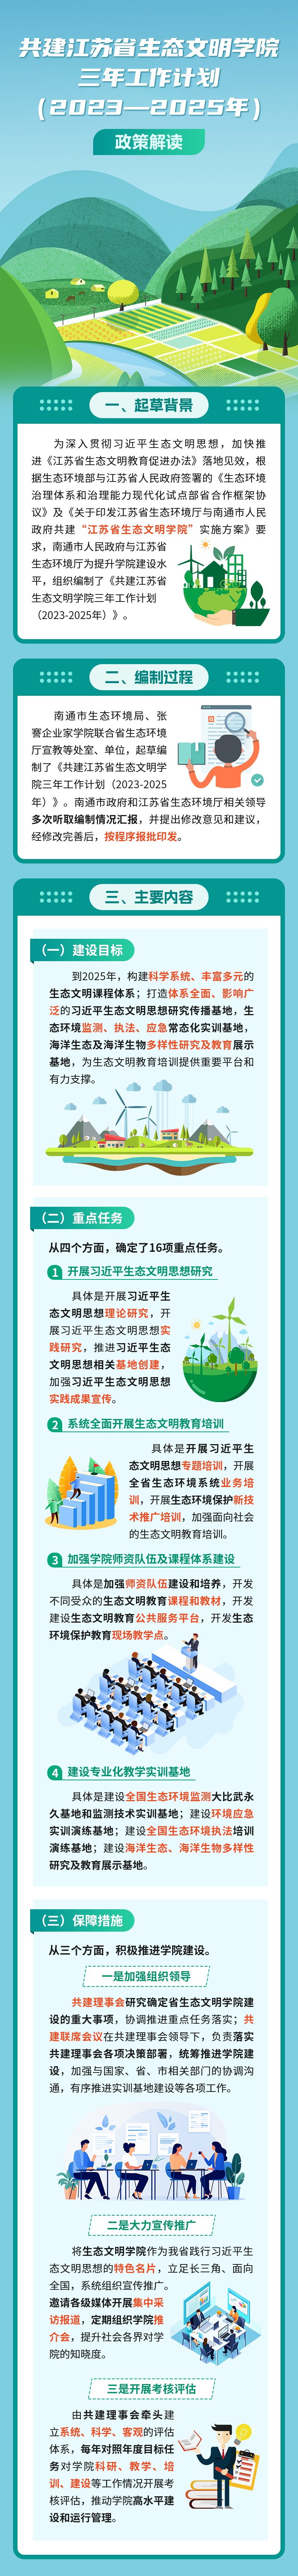 南通市政府《共建江苏省生态文明学院三年工作计划（2023—2025年）》政策解读.png